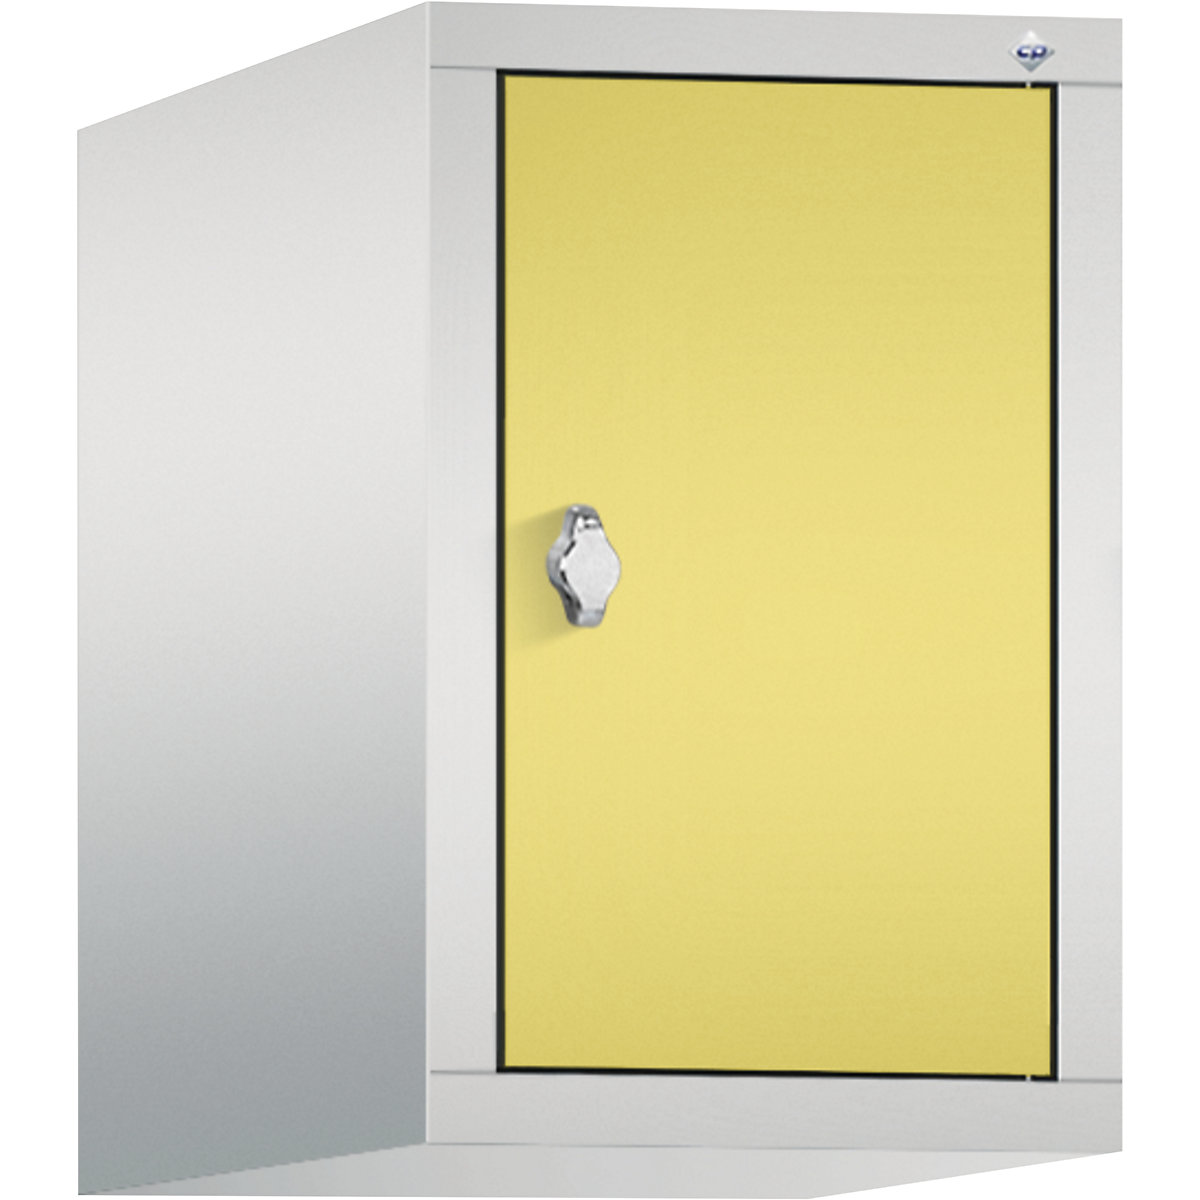 C+P – Altillo CLASSIC, 1 compartimento, anchura de compartimento 300 mm, gris luminoso / amarillo azufre